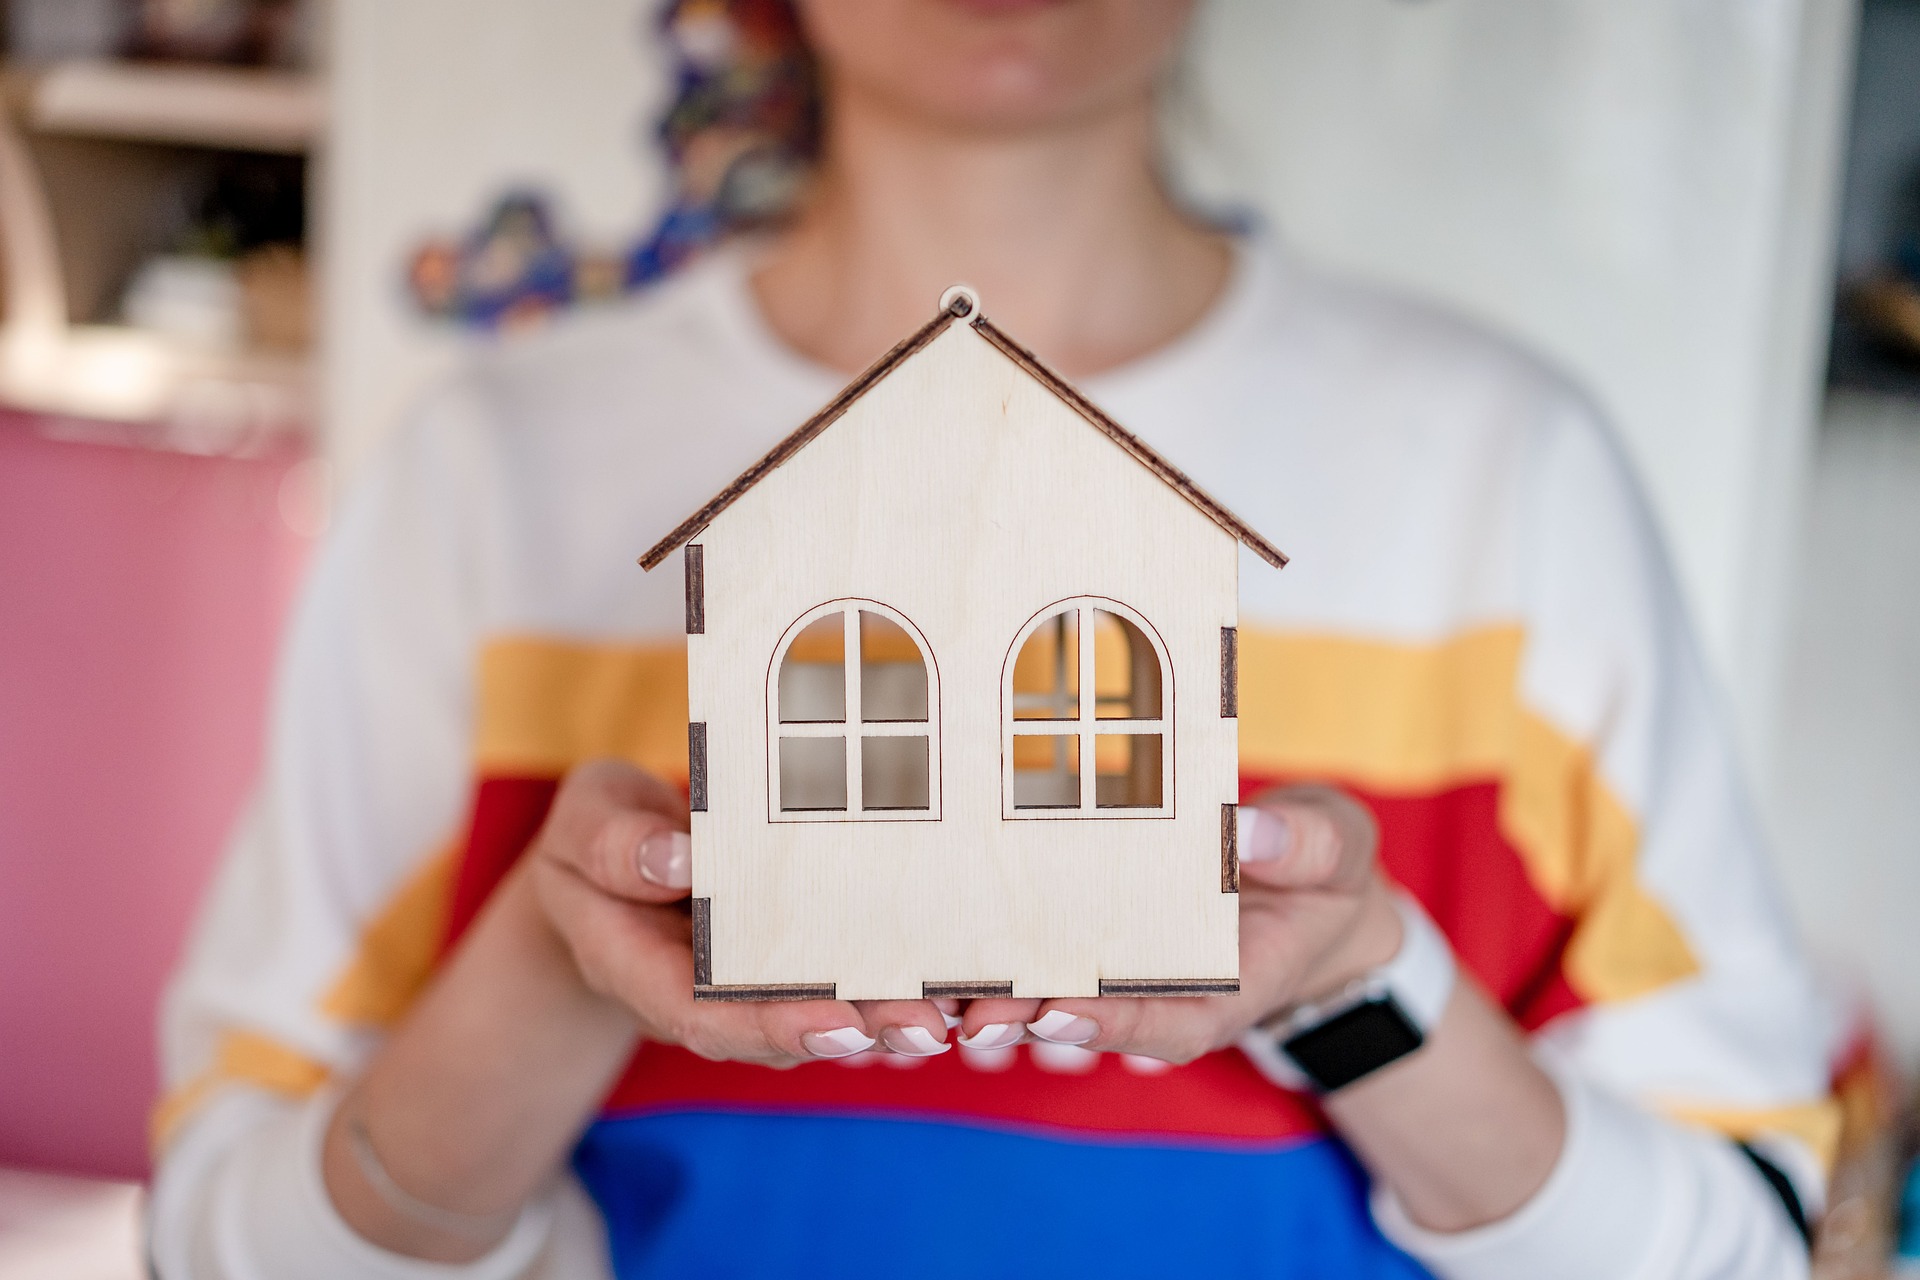 Kredyt hipoteczny - jak wygląda kwestia wcześniejszej spłaty?